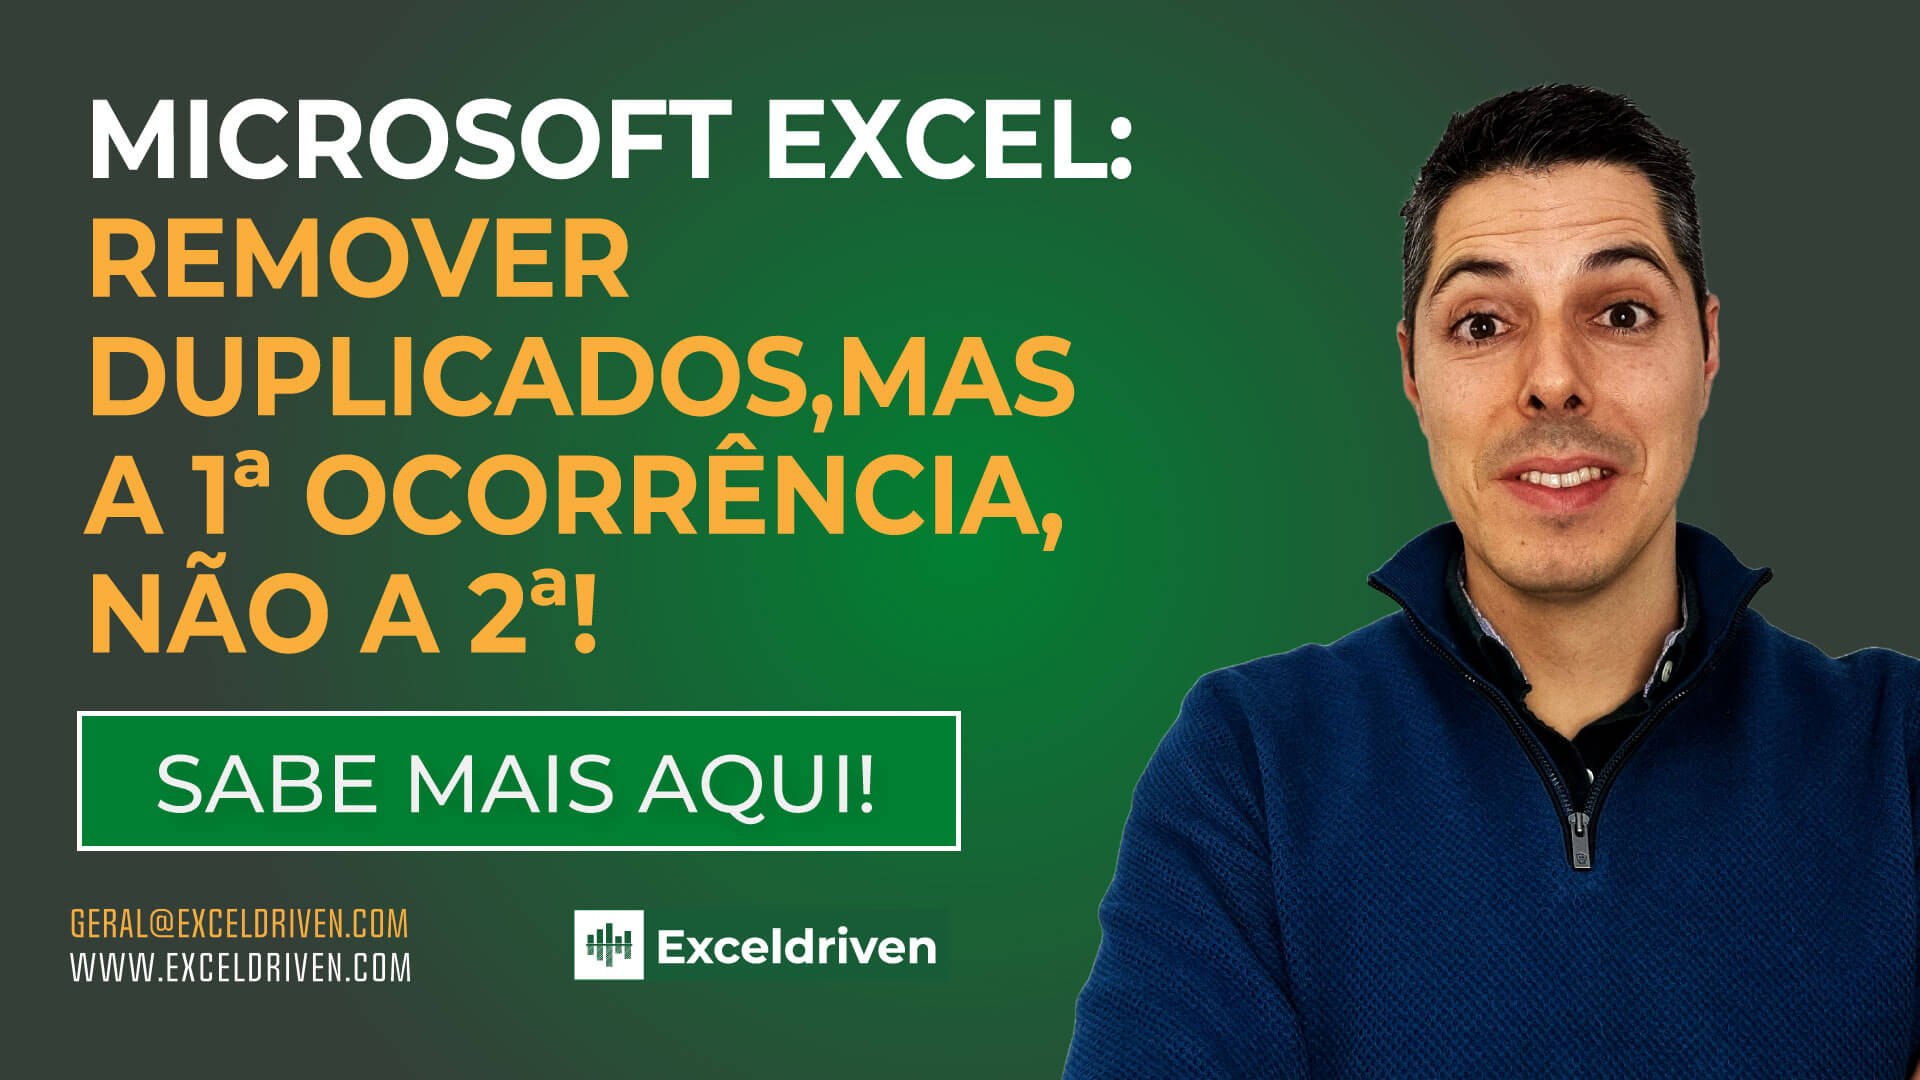 Microsoft Excel: Remover Duplicados, mas a 1ª ocorrência, não a 2ª!